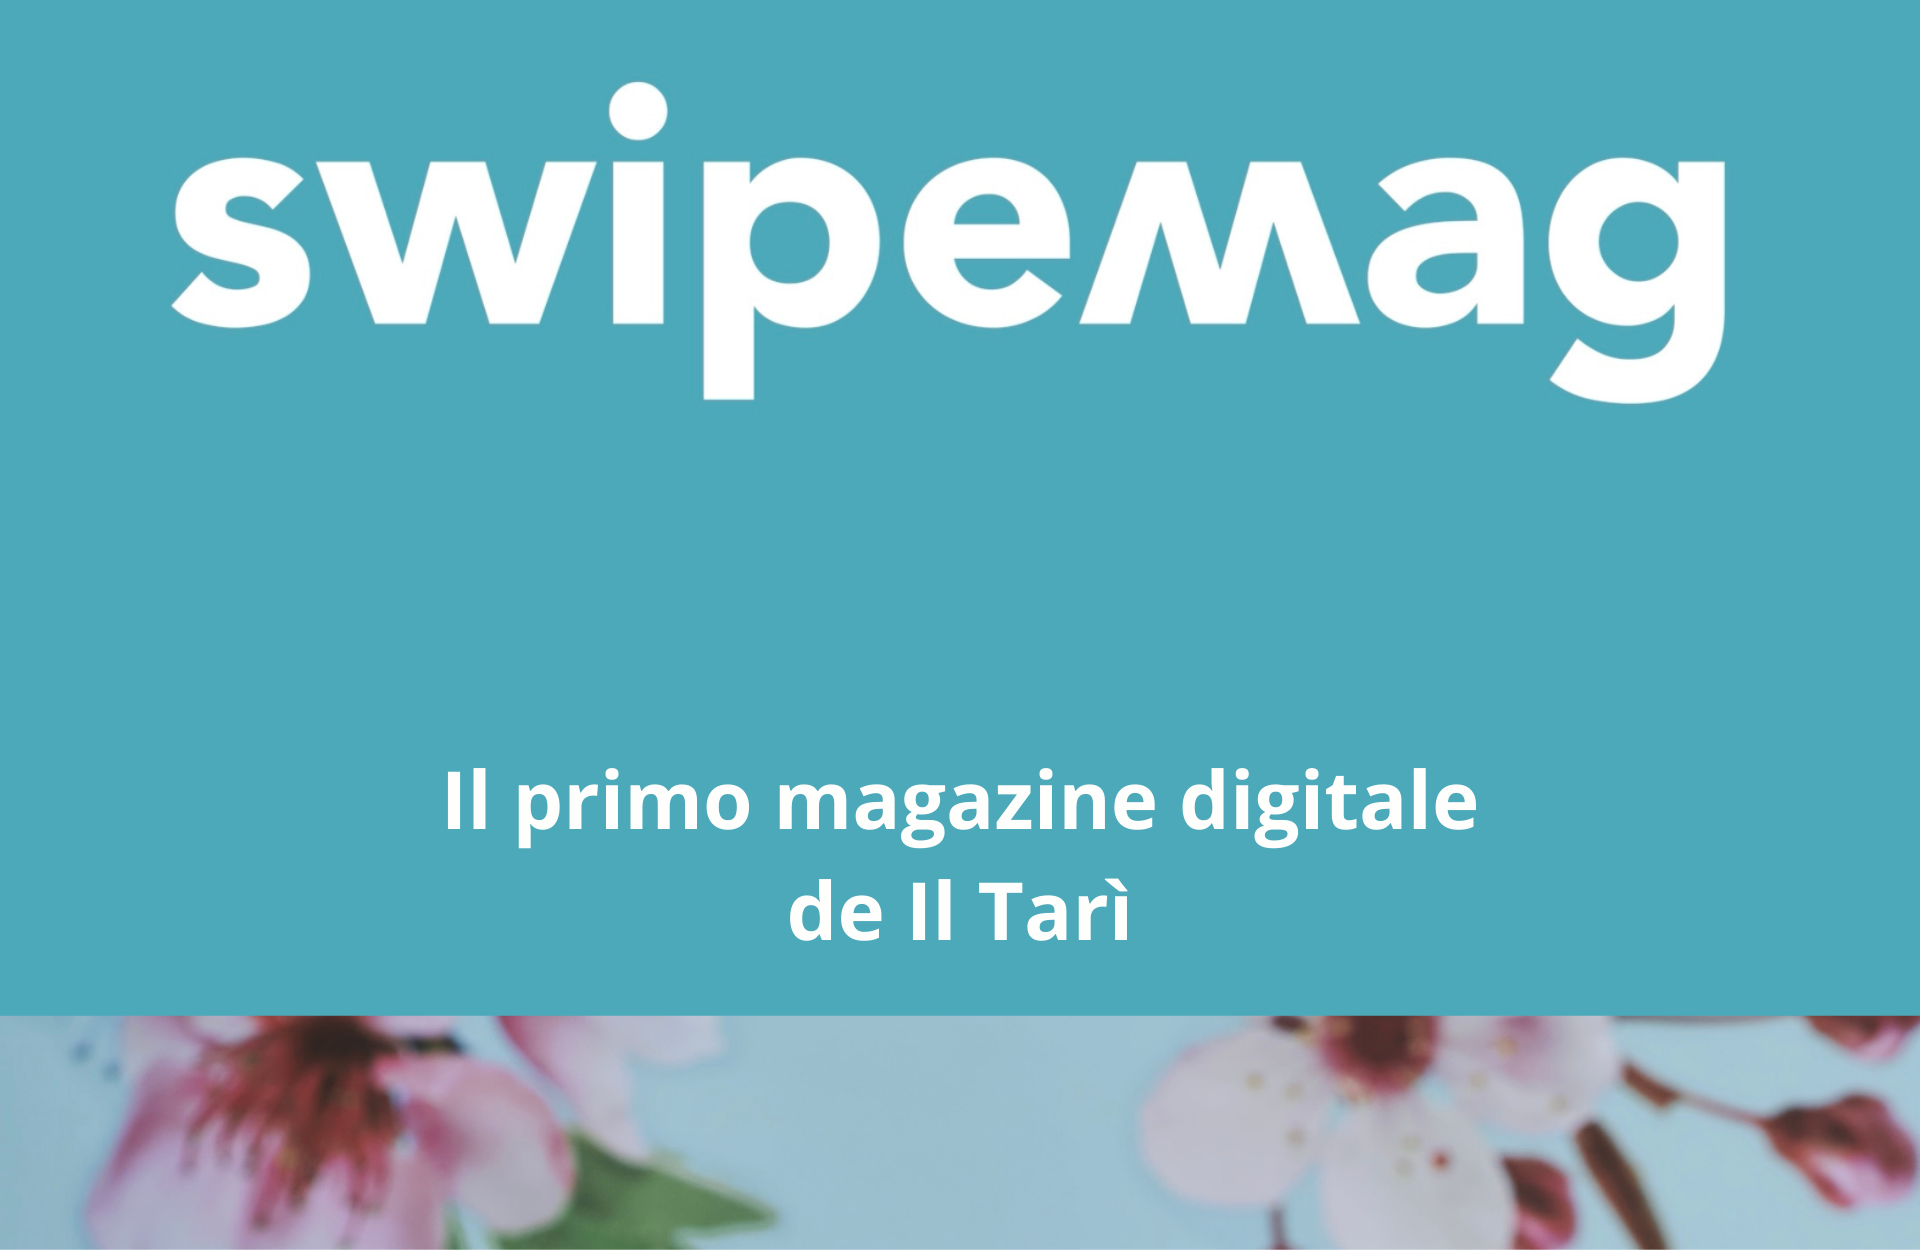 Swipemag: the new magazine